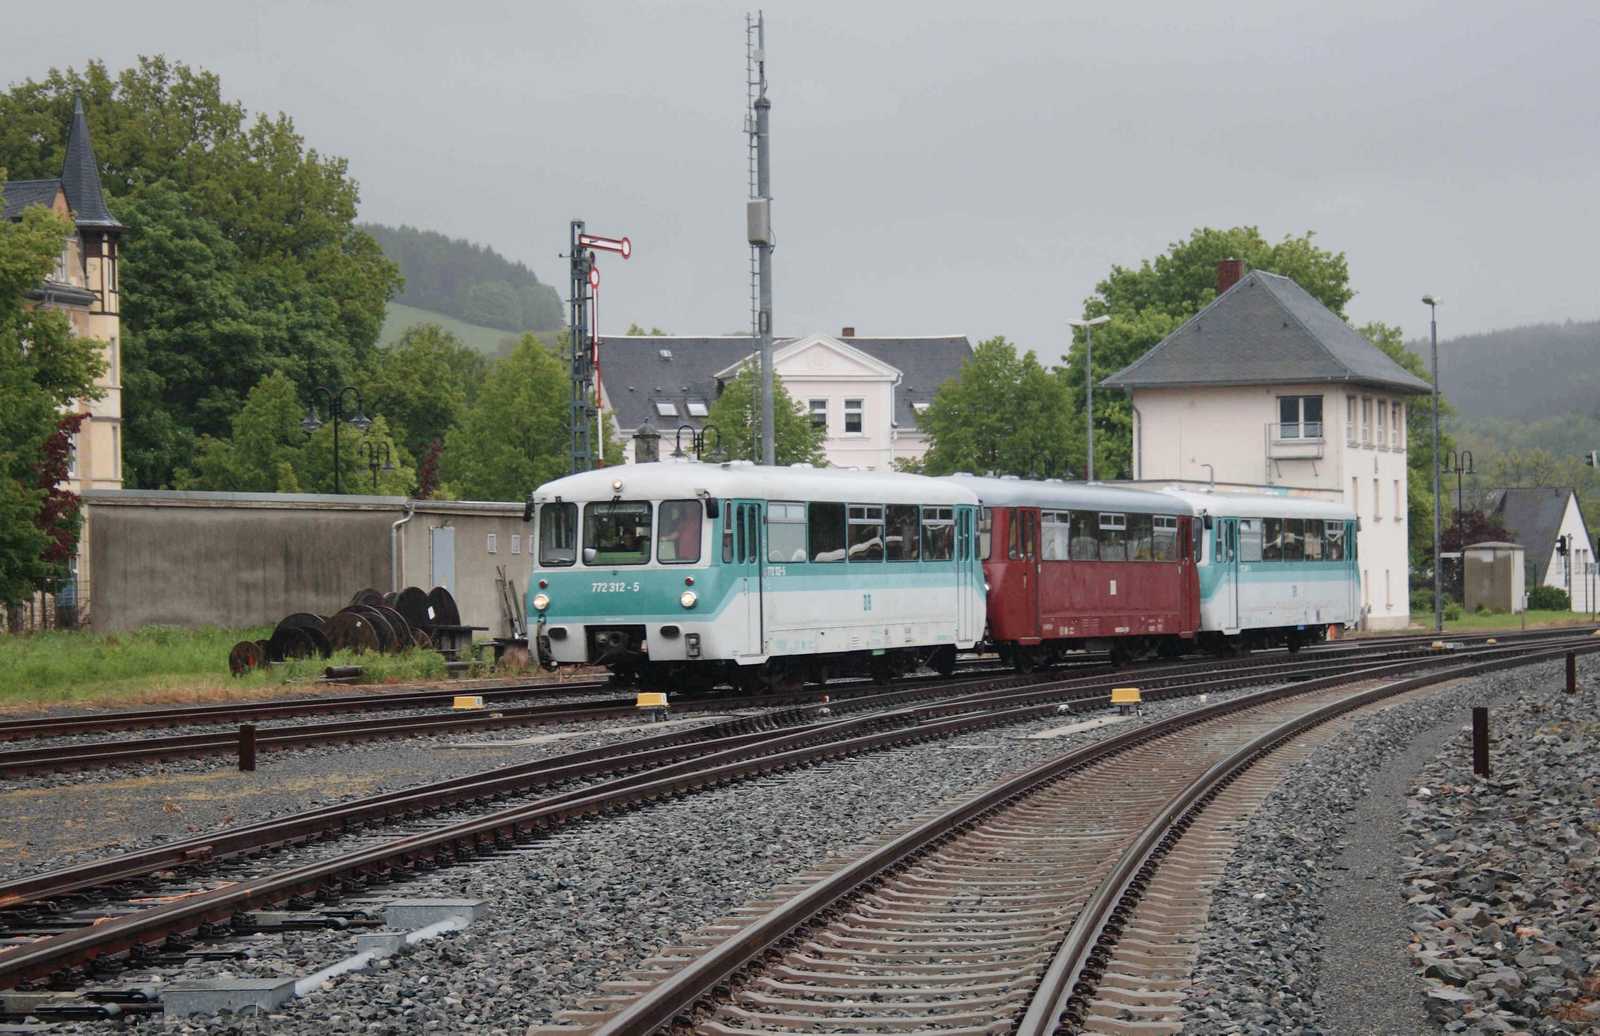 Trotz des wenig einladenden Wetters griff Axel Schlenkrich am 26. Mai 2013 zur Kamera, um die Einfahrt des Triebwagenzuges in den Bahnhof Schwarzenberg (Erzgeb) im Bild festzuhalten.